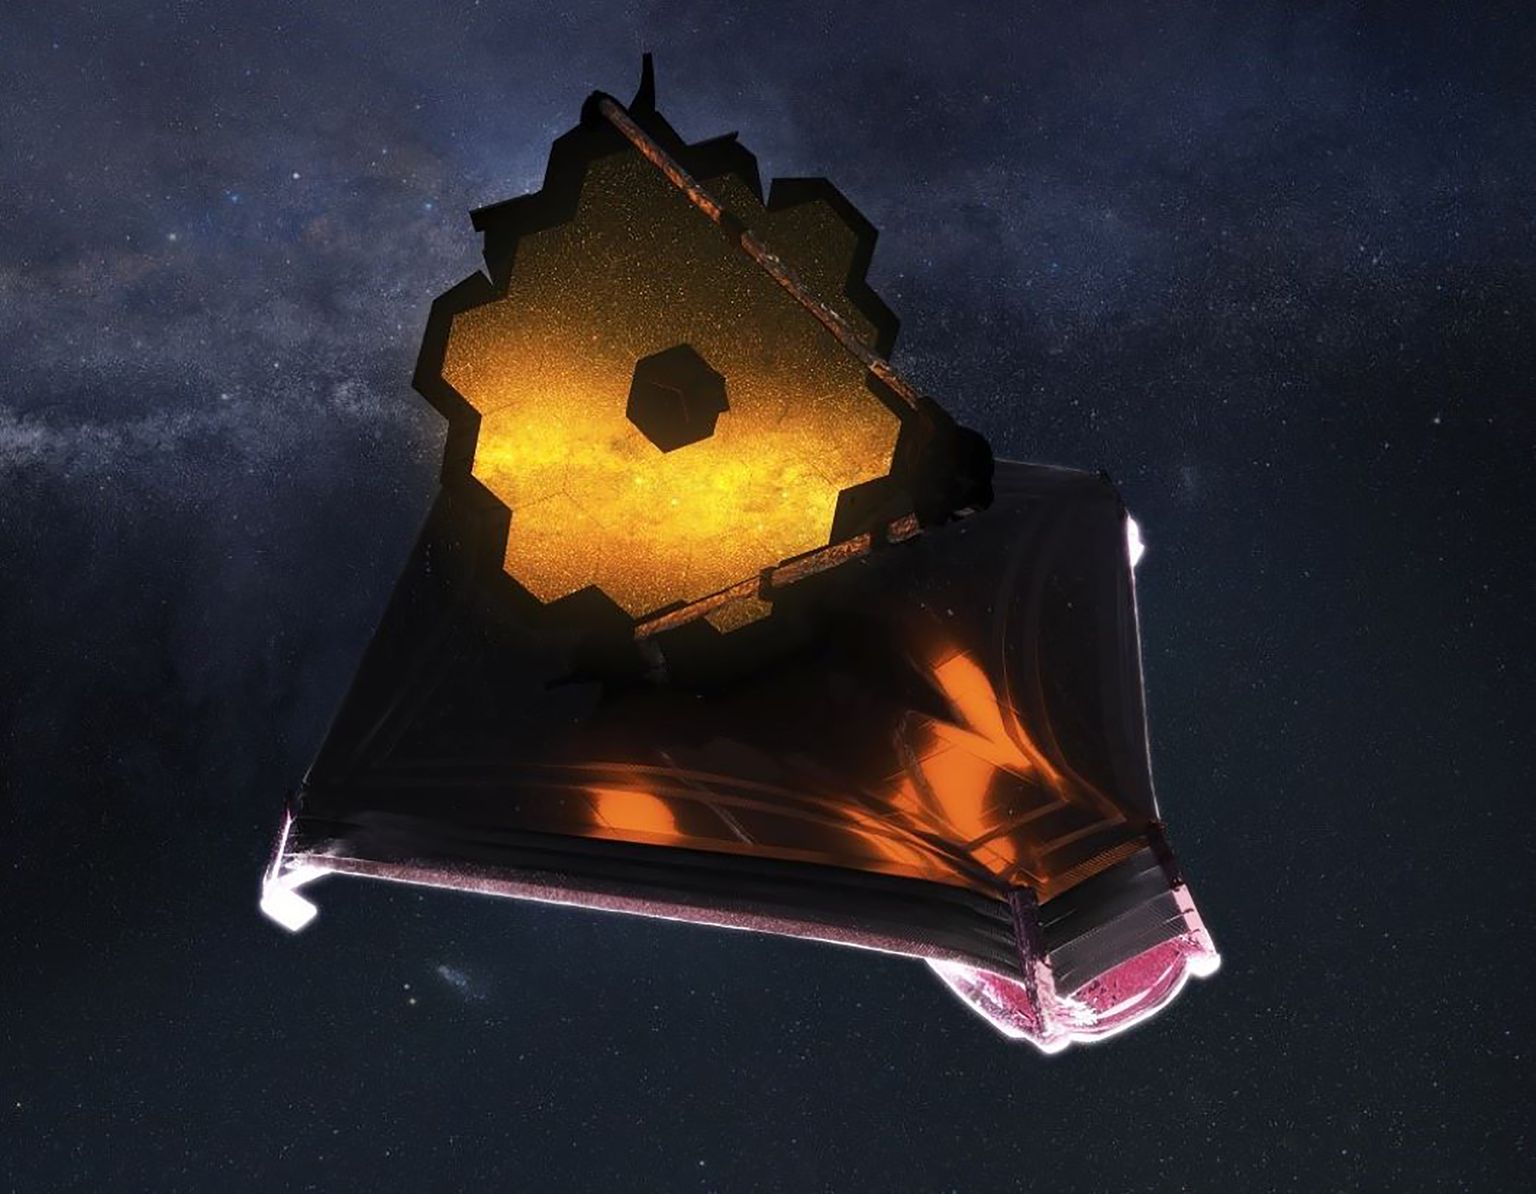 Selline näeb välja lahti volditud James Webbi kosmoseteleskoop. 12. juulil saab näha selle esimesi teaduslikke värvipilte.